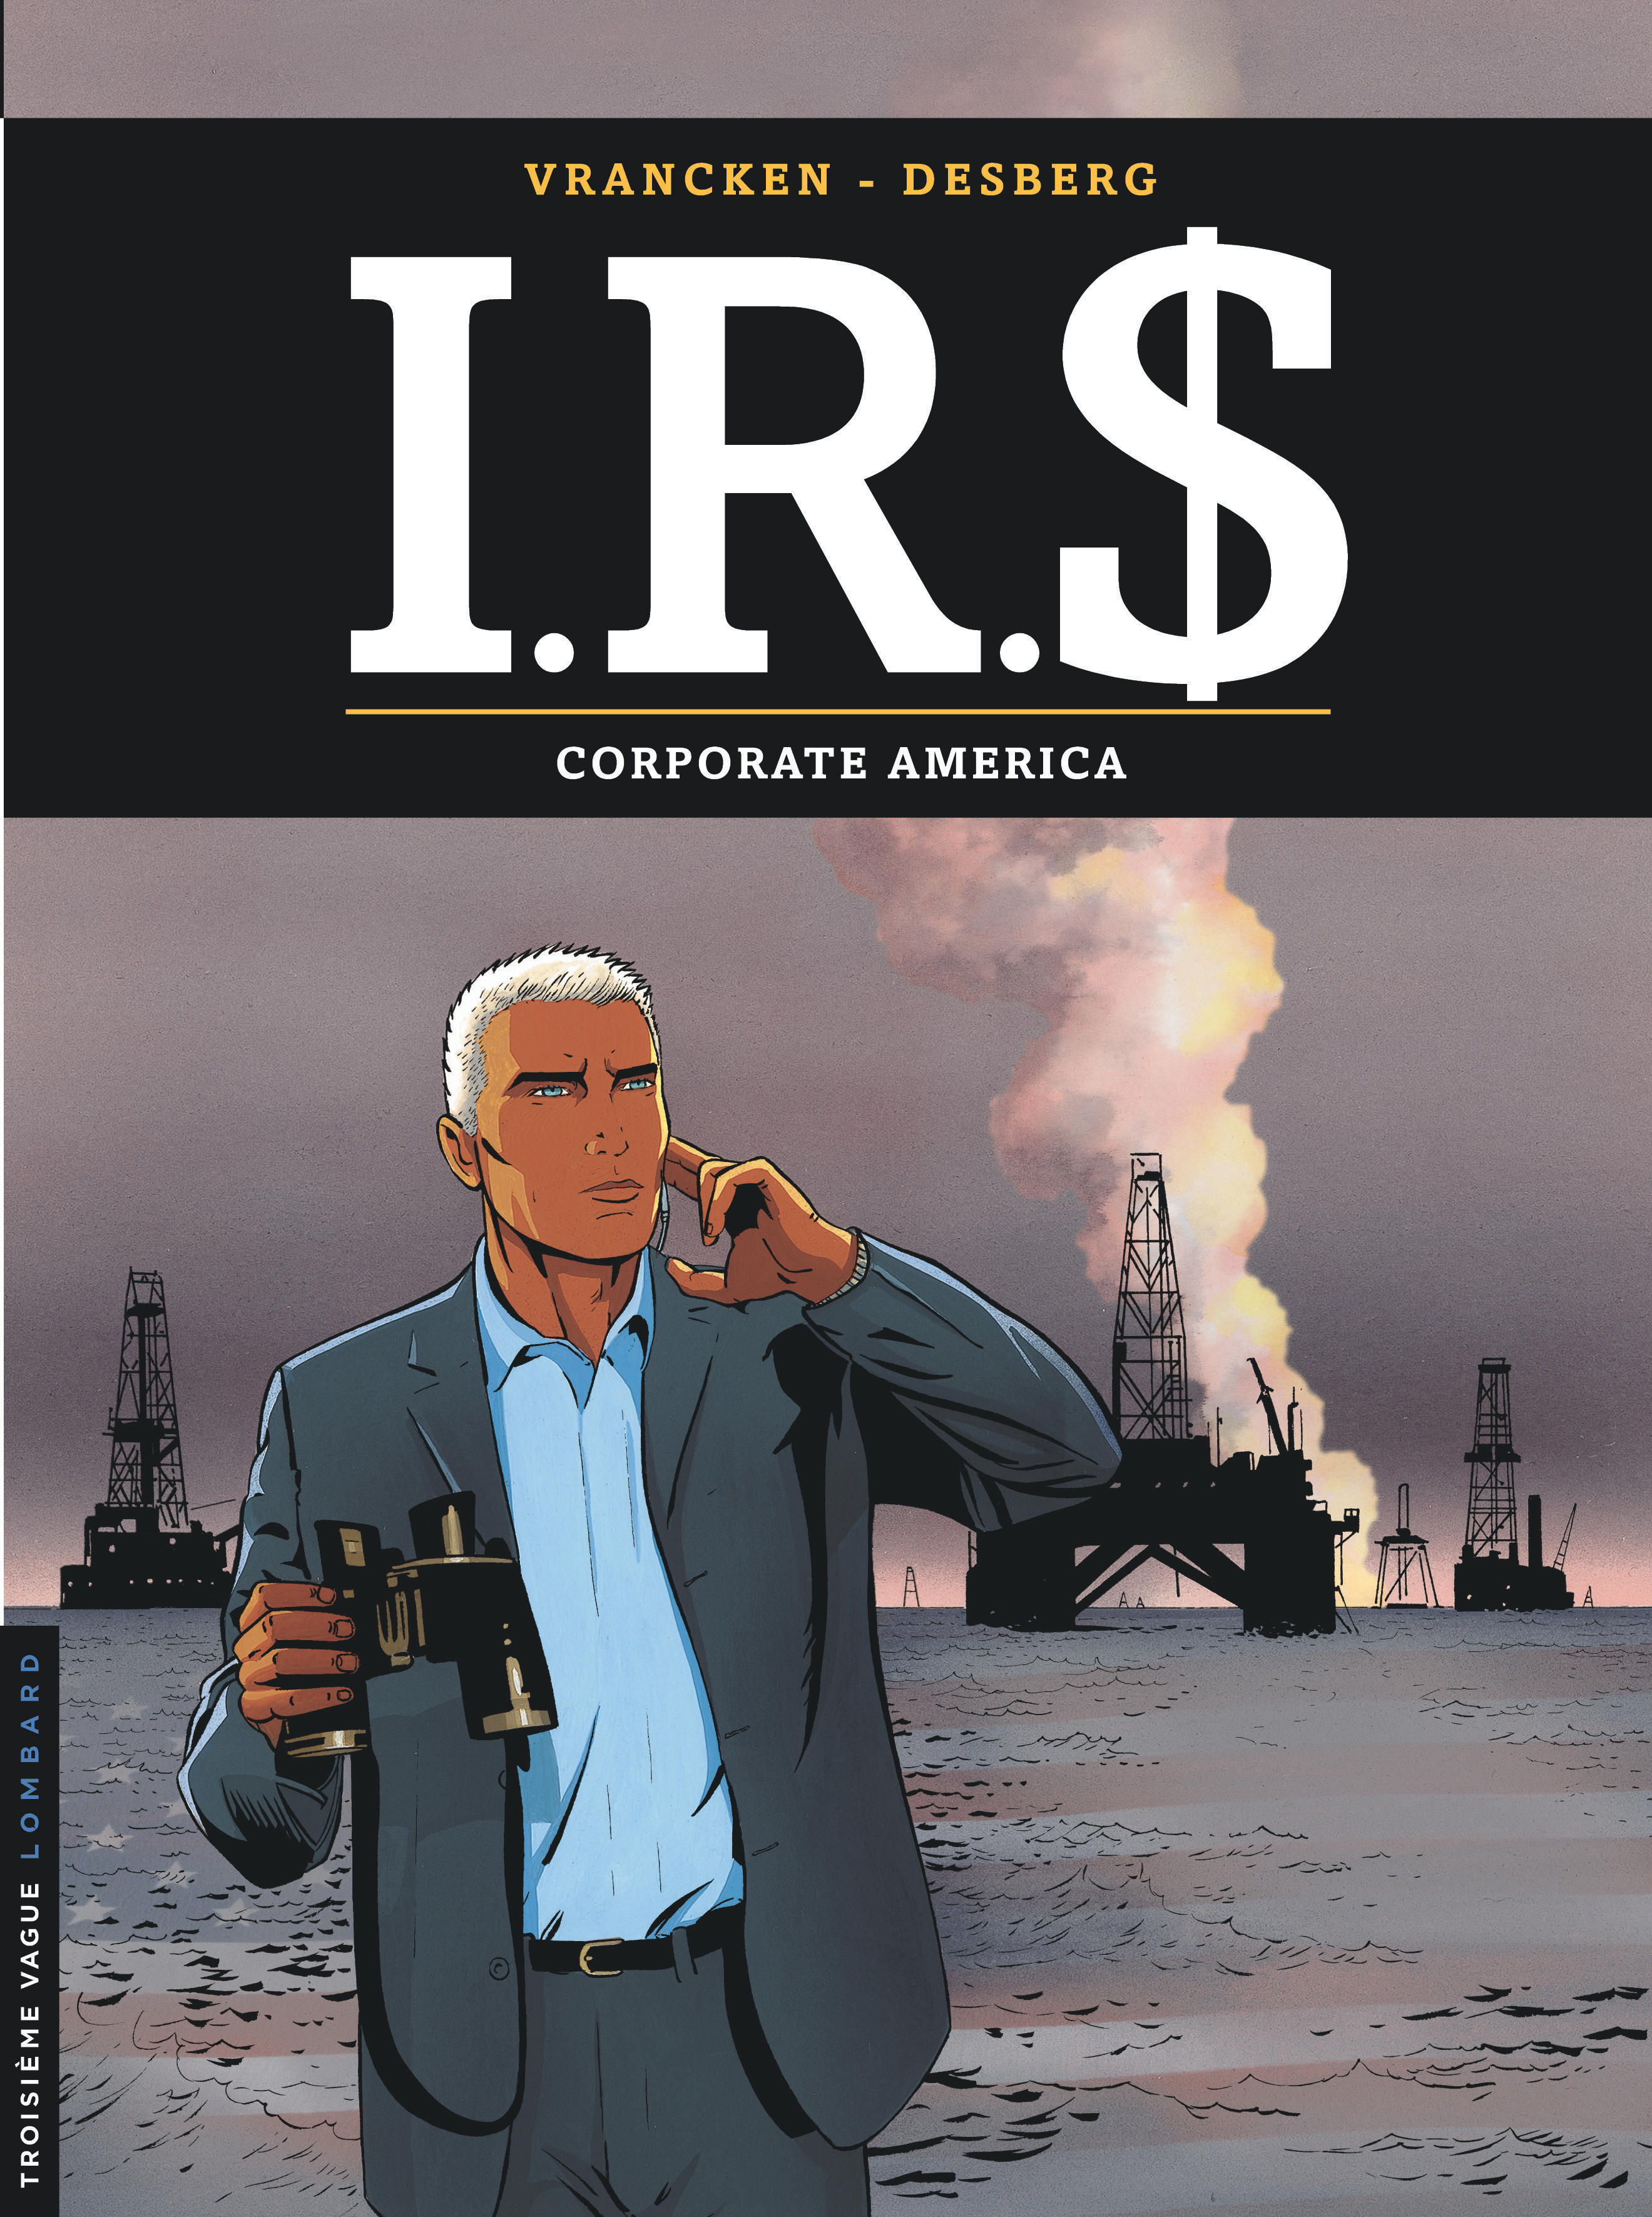 I.R.$ – Tome 7 – Corporate America - couv